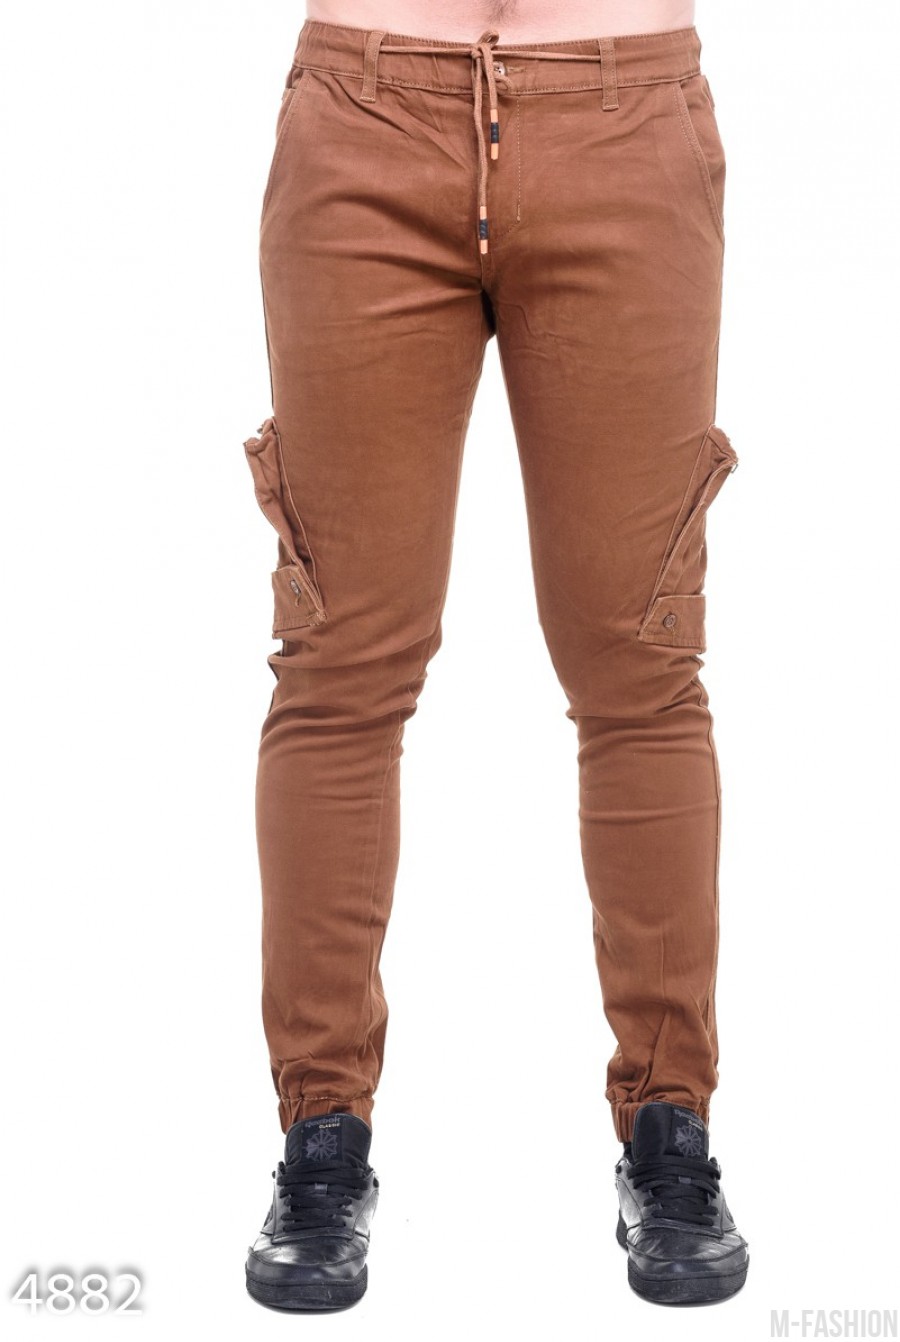 Коричневые мужские брюки с боковыми и задними накладными карманами - Фото 1